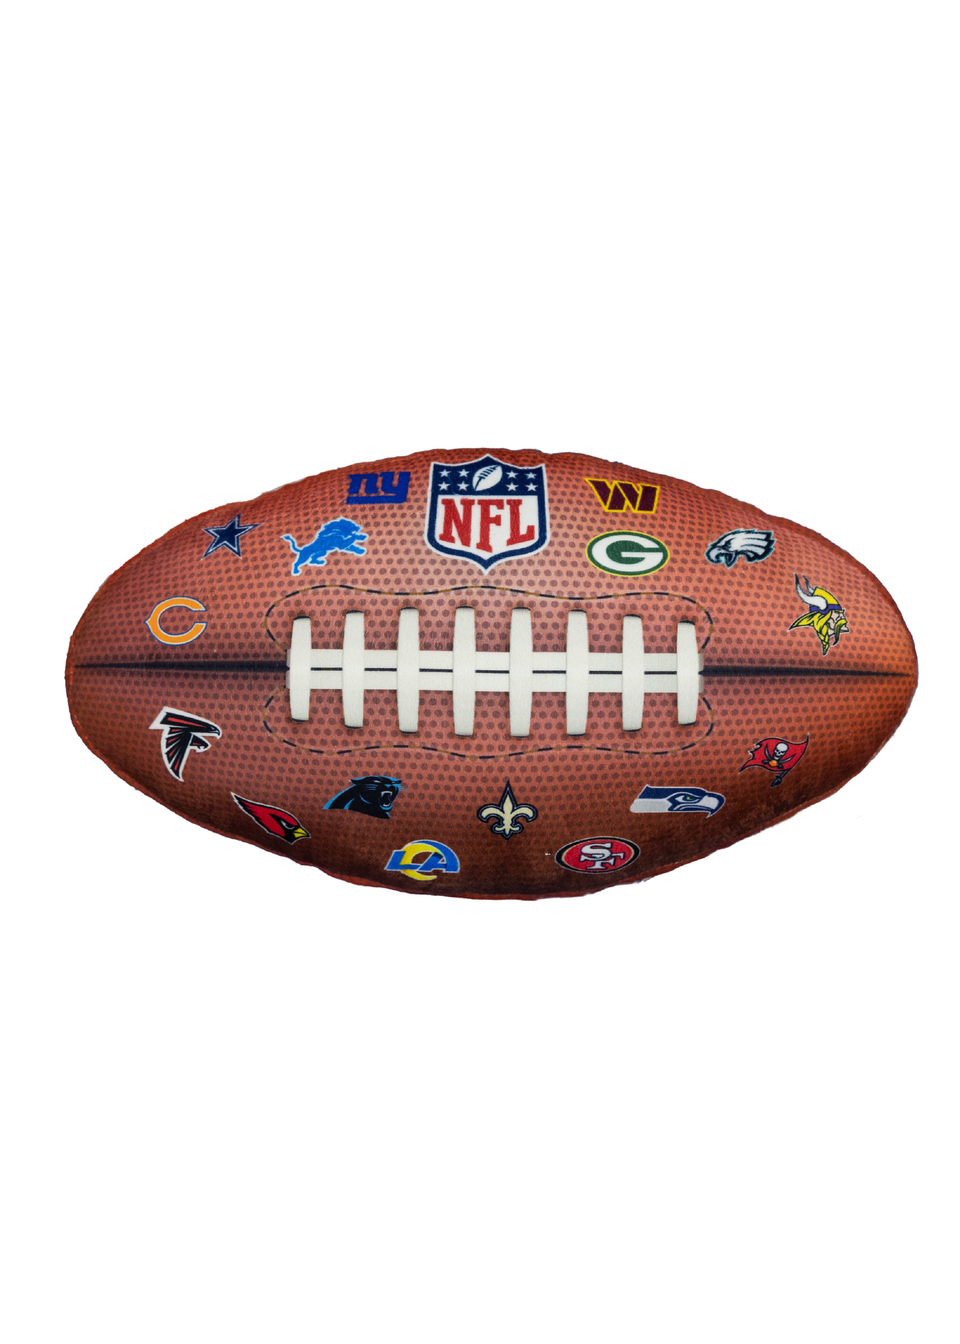 NFL Oval Shaped Cushion